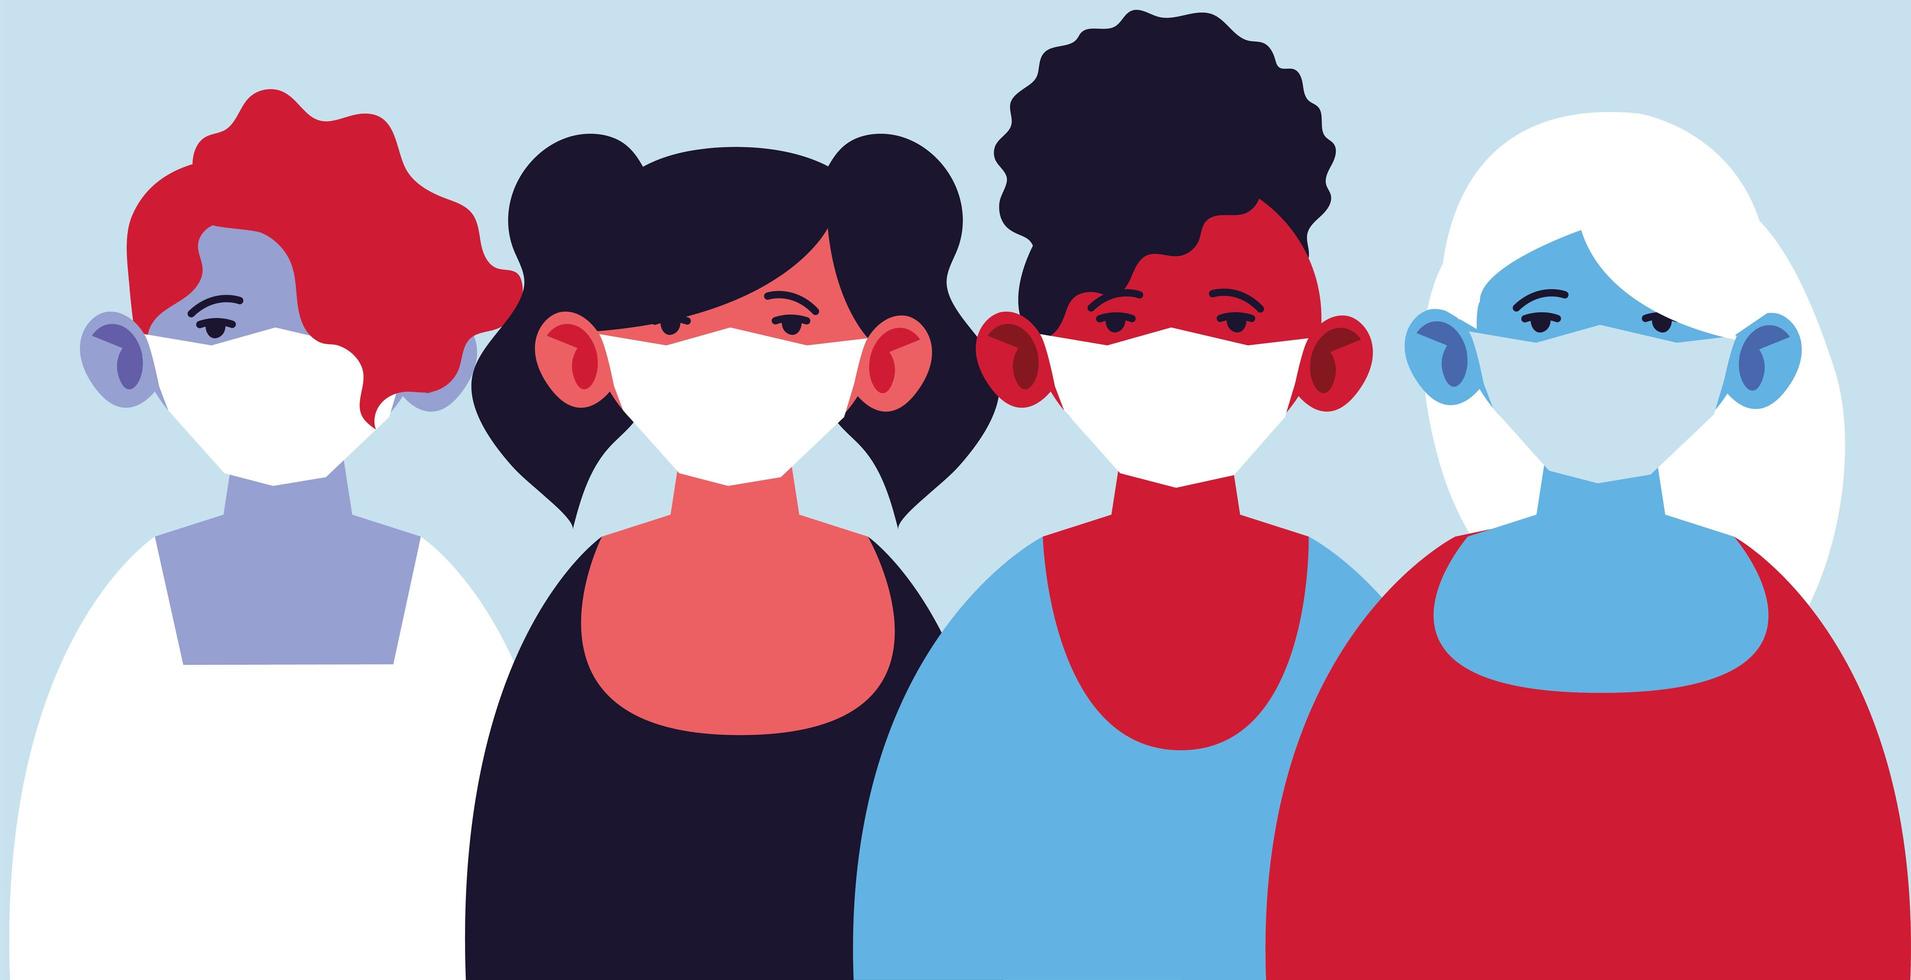 vrouwen met medische maskers die zichzelf beschermen tegen pandemie vector